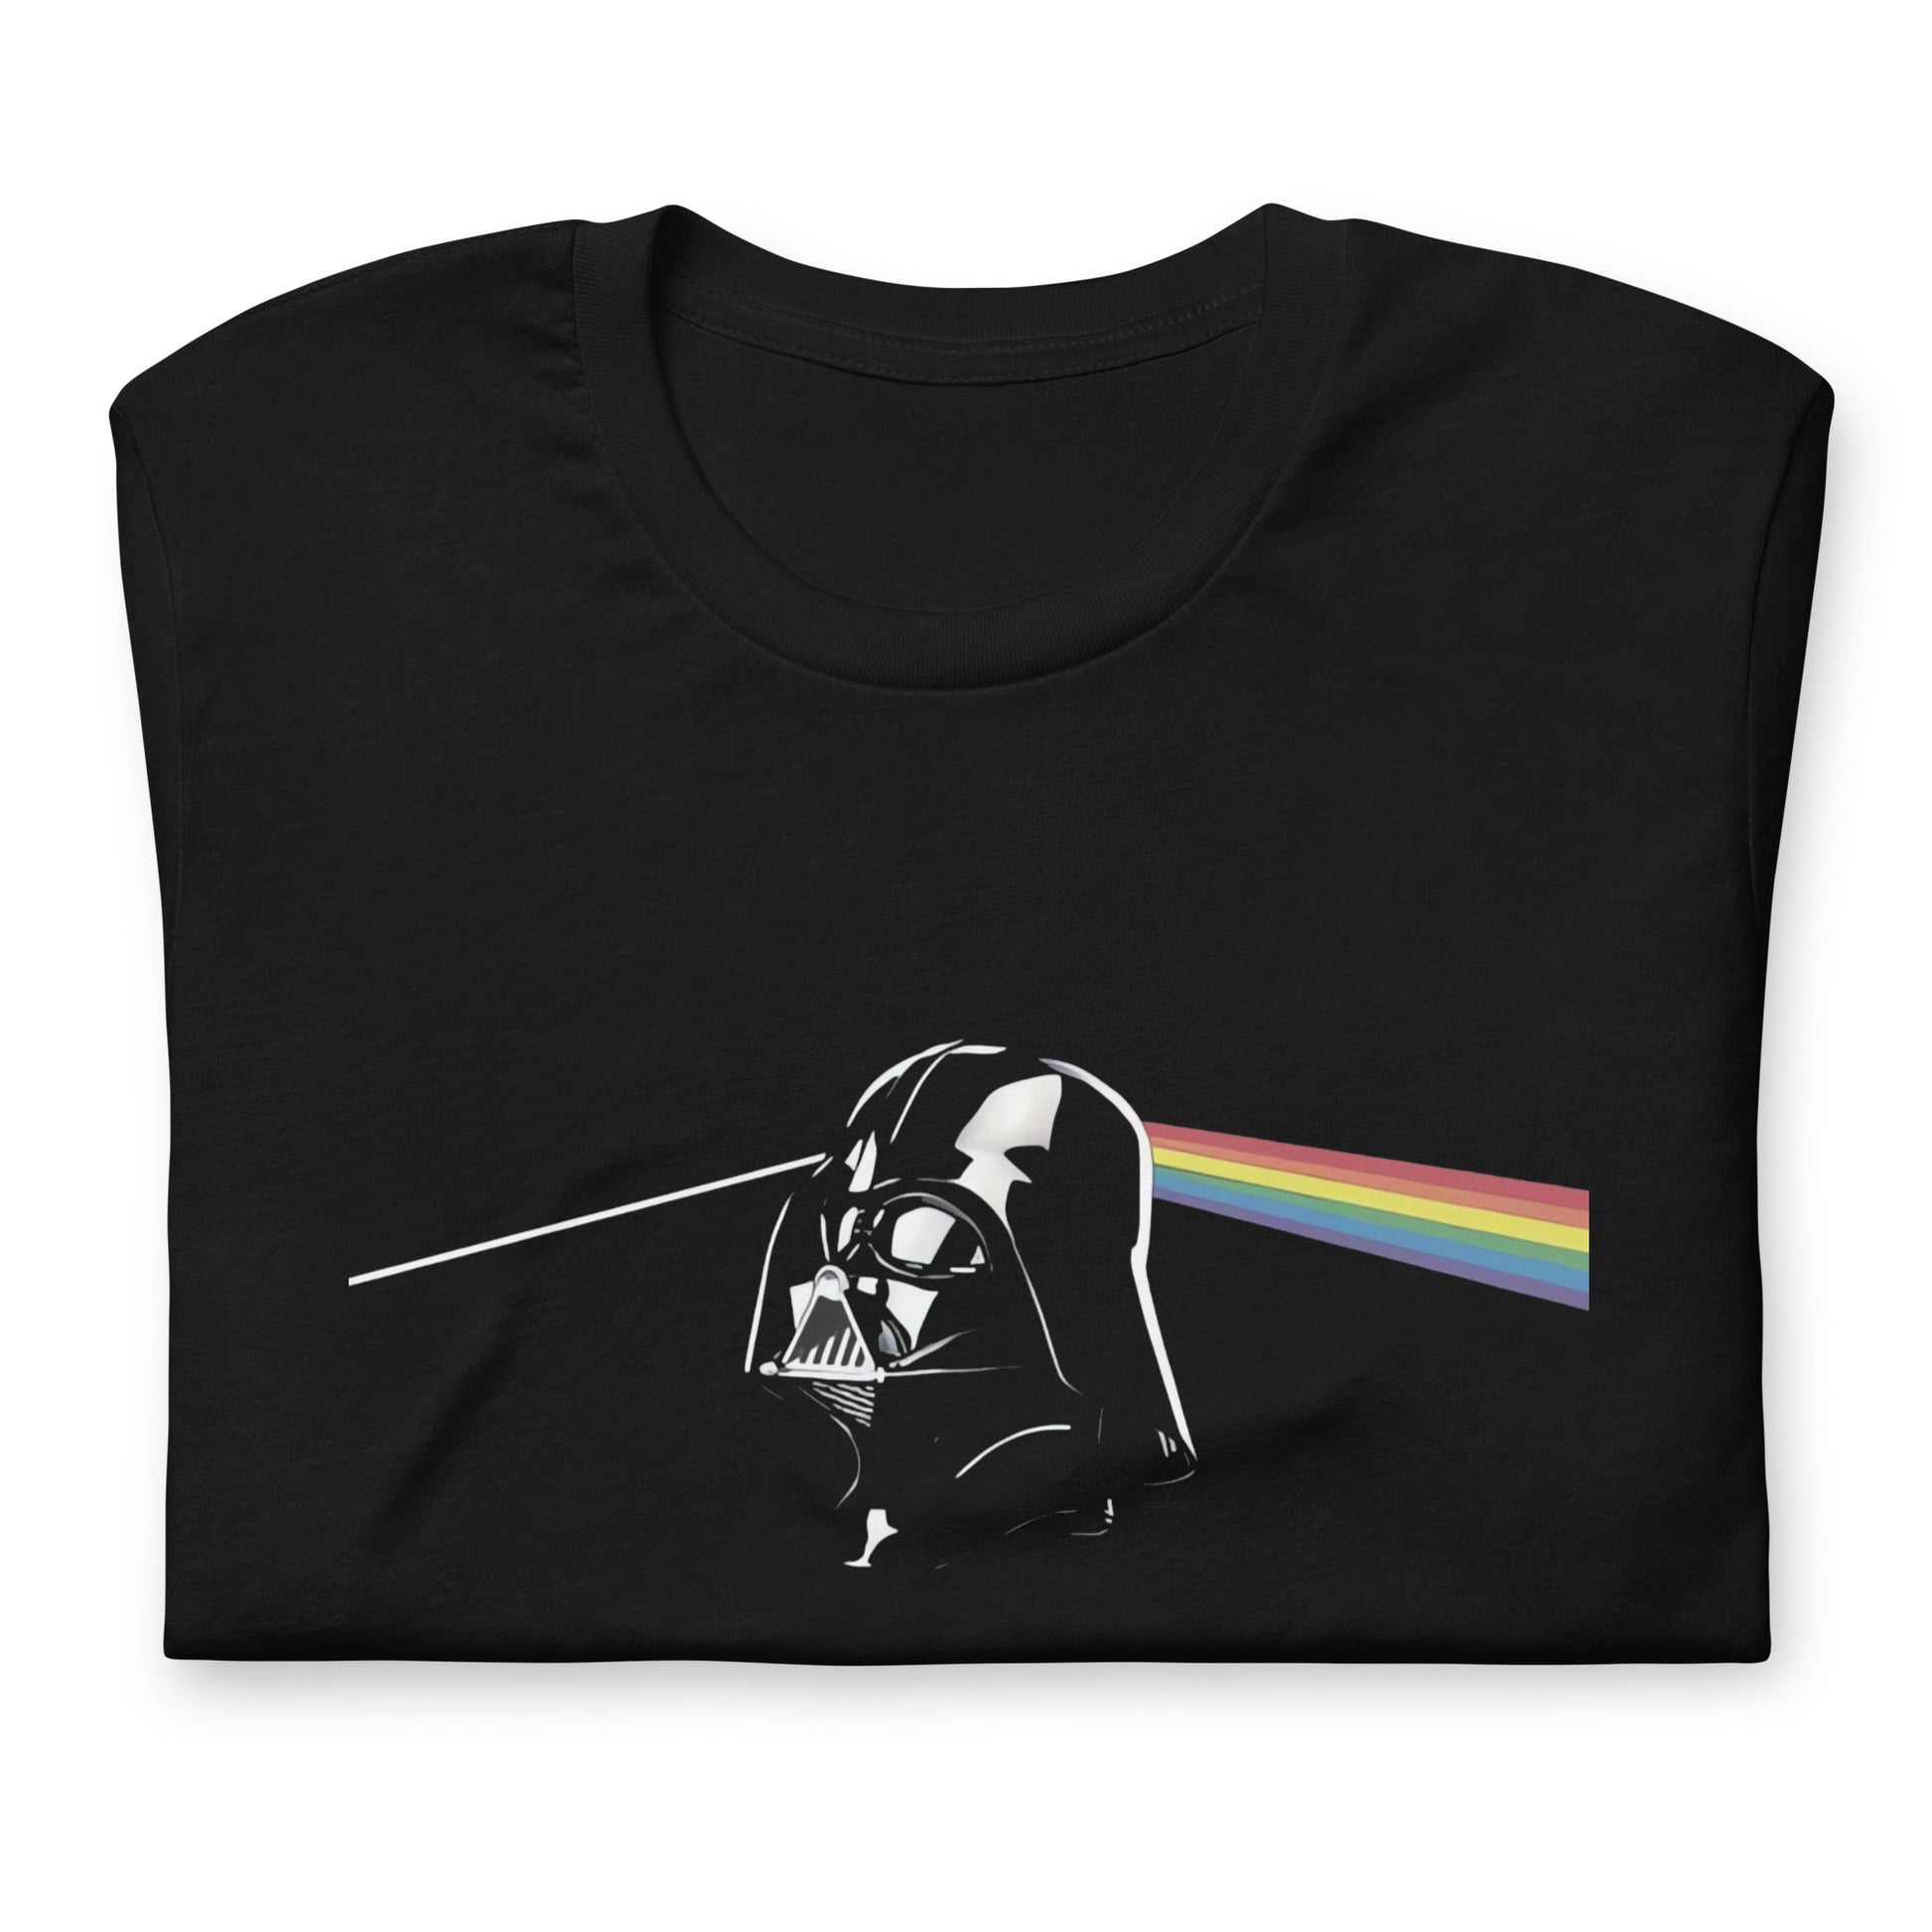 ¡Compra el mejor merchandising en Superstar! Encuentra diseños únicos y de alta calidad en playeras, Playera Vader Dark Side